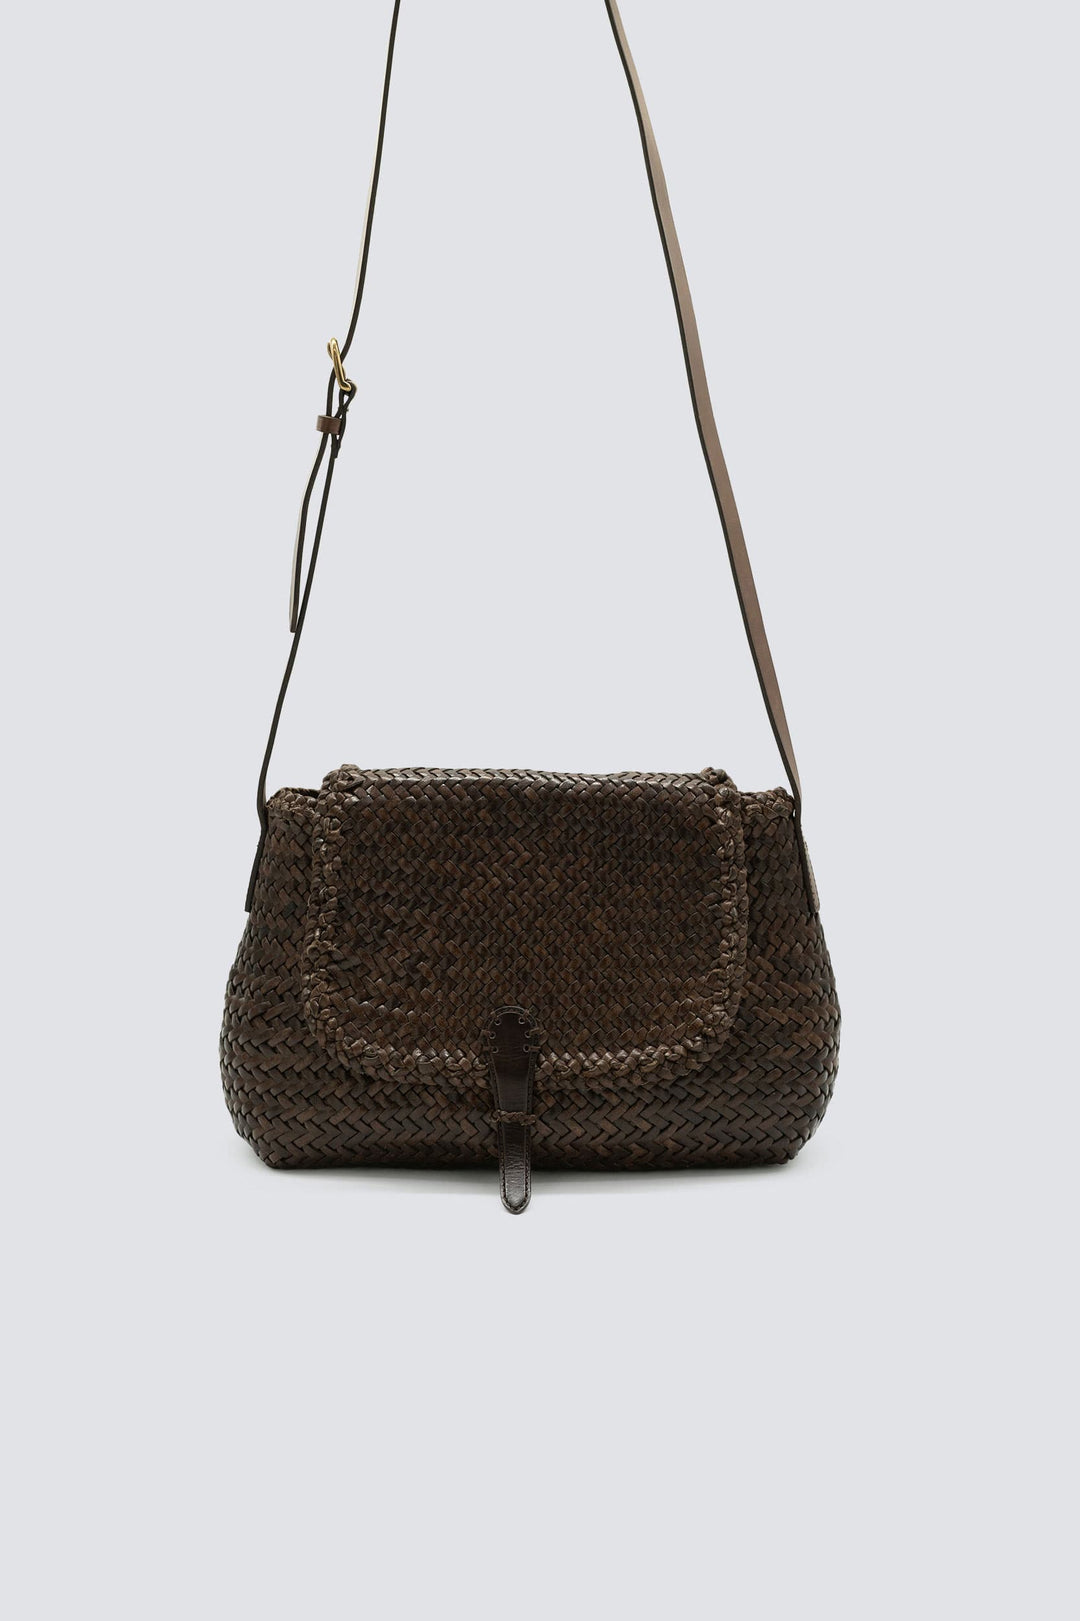 Dragon Diffusion woven leather bag handmade - City Bag Big Dark Brown